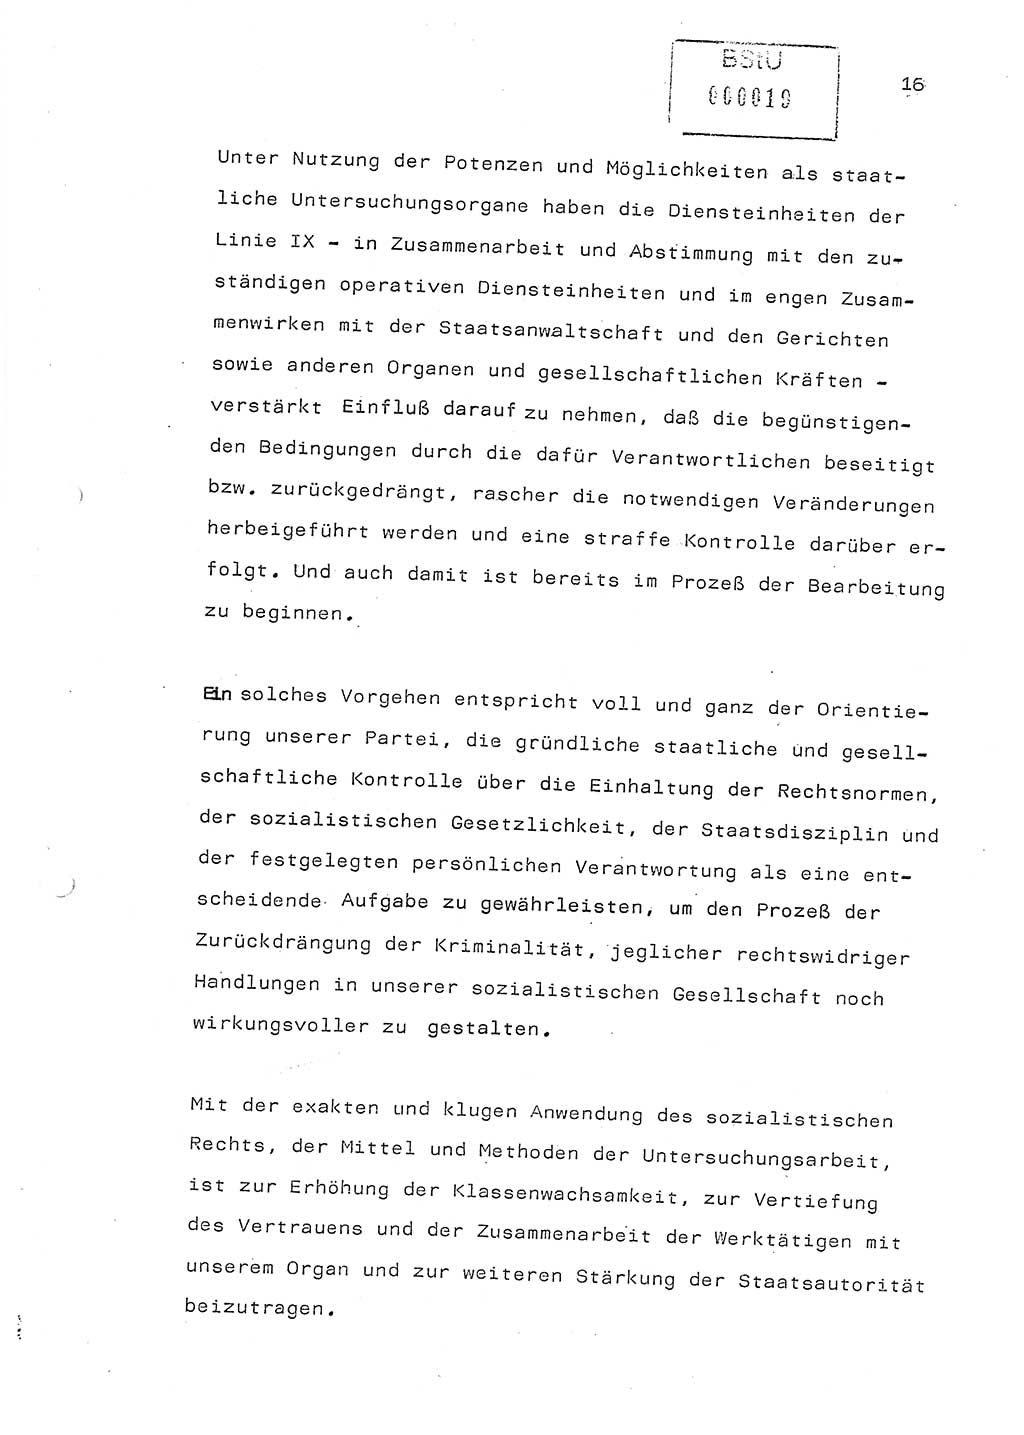 Referat (Generaloberst Erich Mielke) auf der Zentralen Dienstkonferenz am 24.5.1979 [Ministerium für Staatssicherheit (MfS), Deutsche Demokratische Republik (DDR), Der Minister], Berlin 1979, Seite 16 (Ref. DK DDR MfS Min. /79 1979, S. 16)